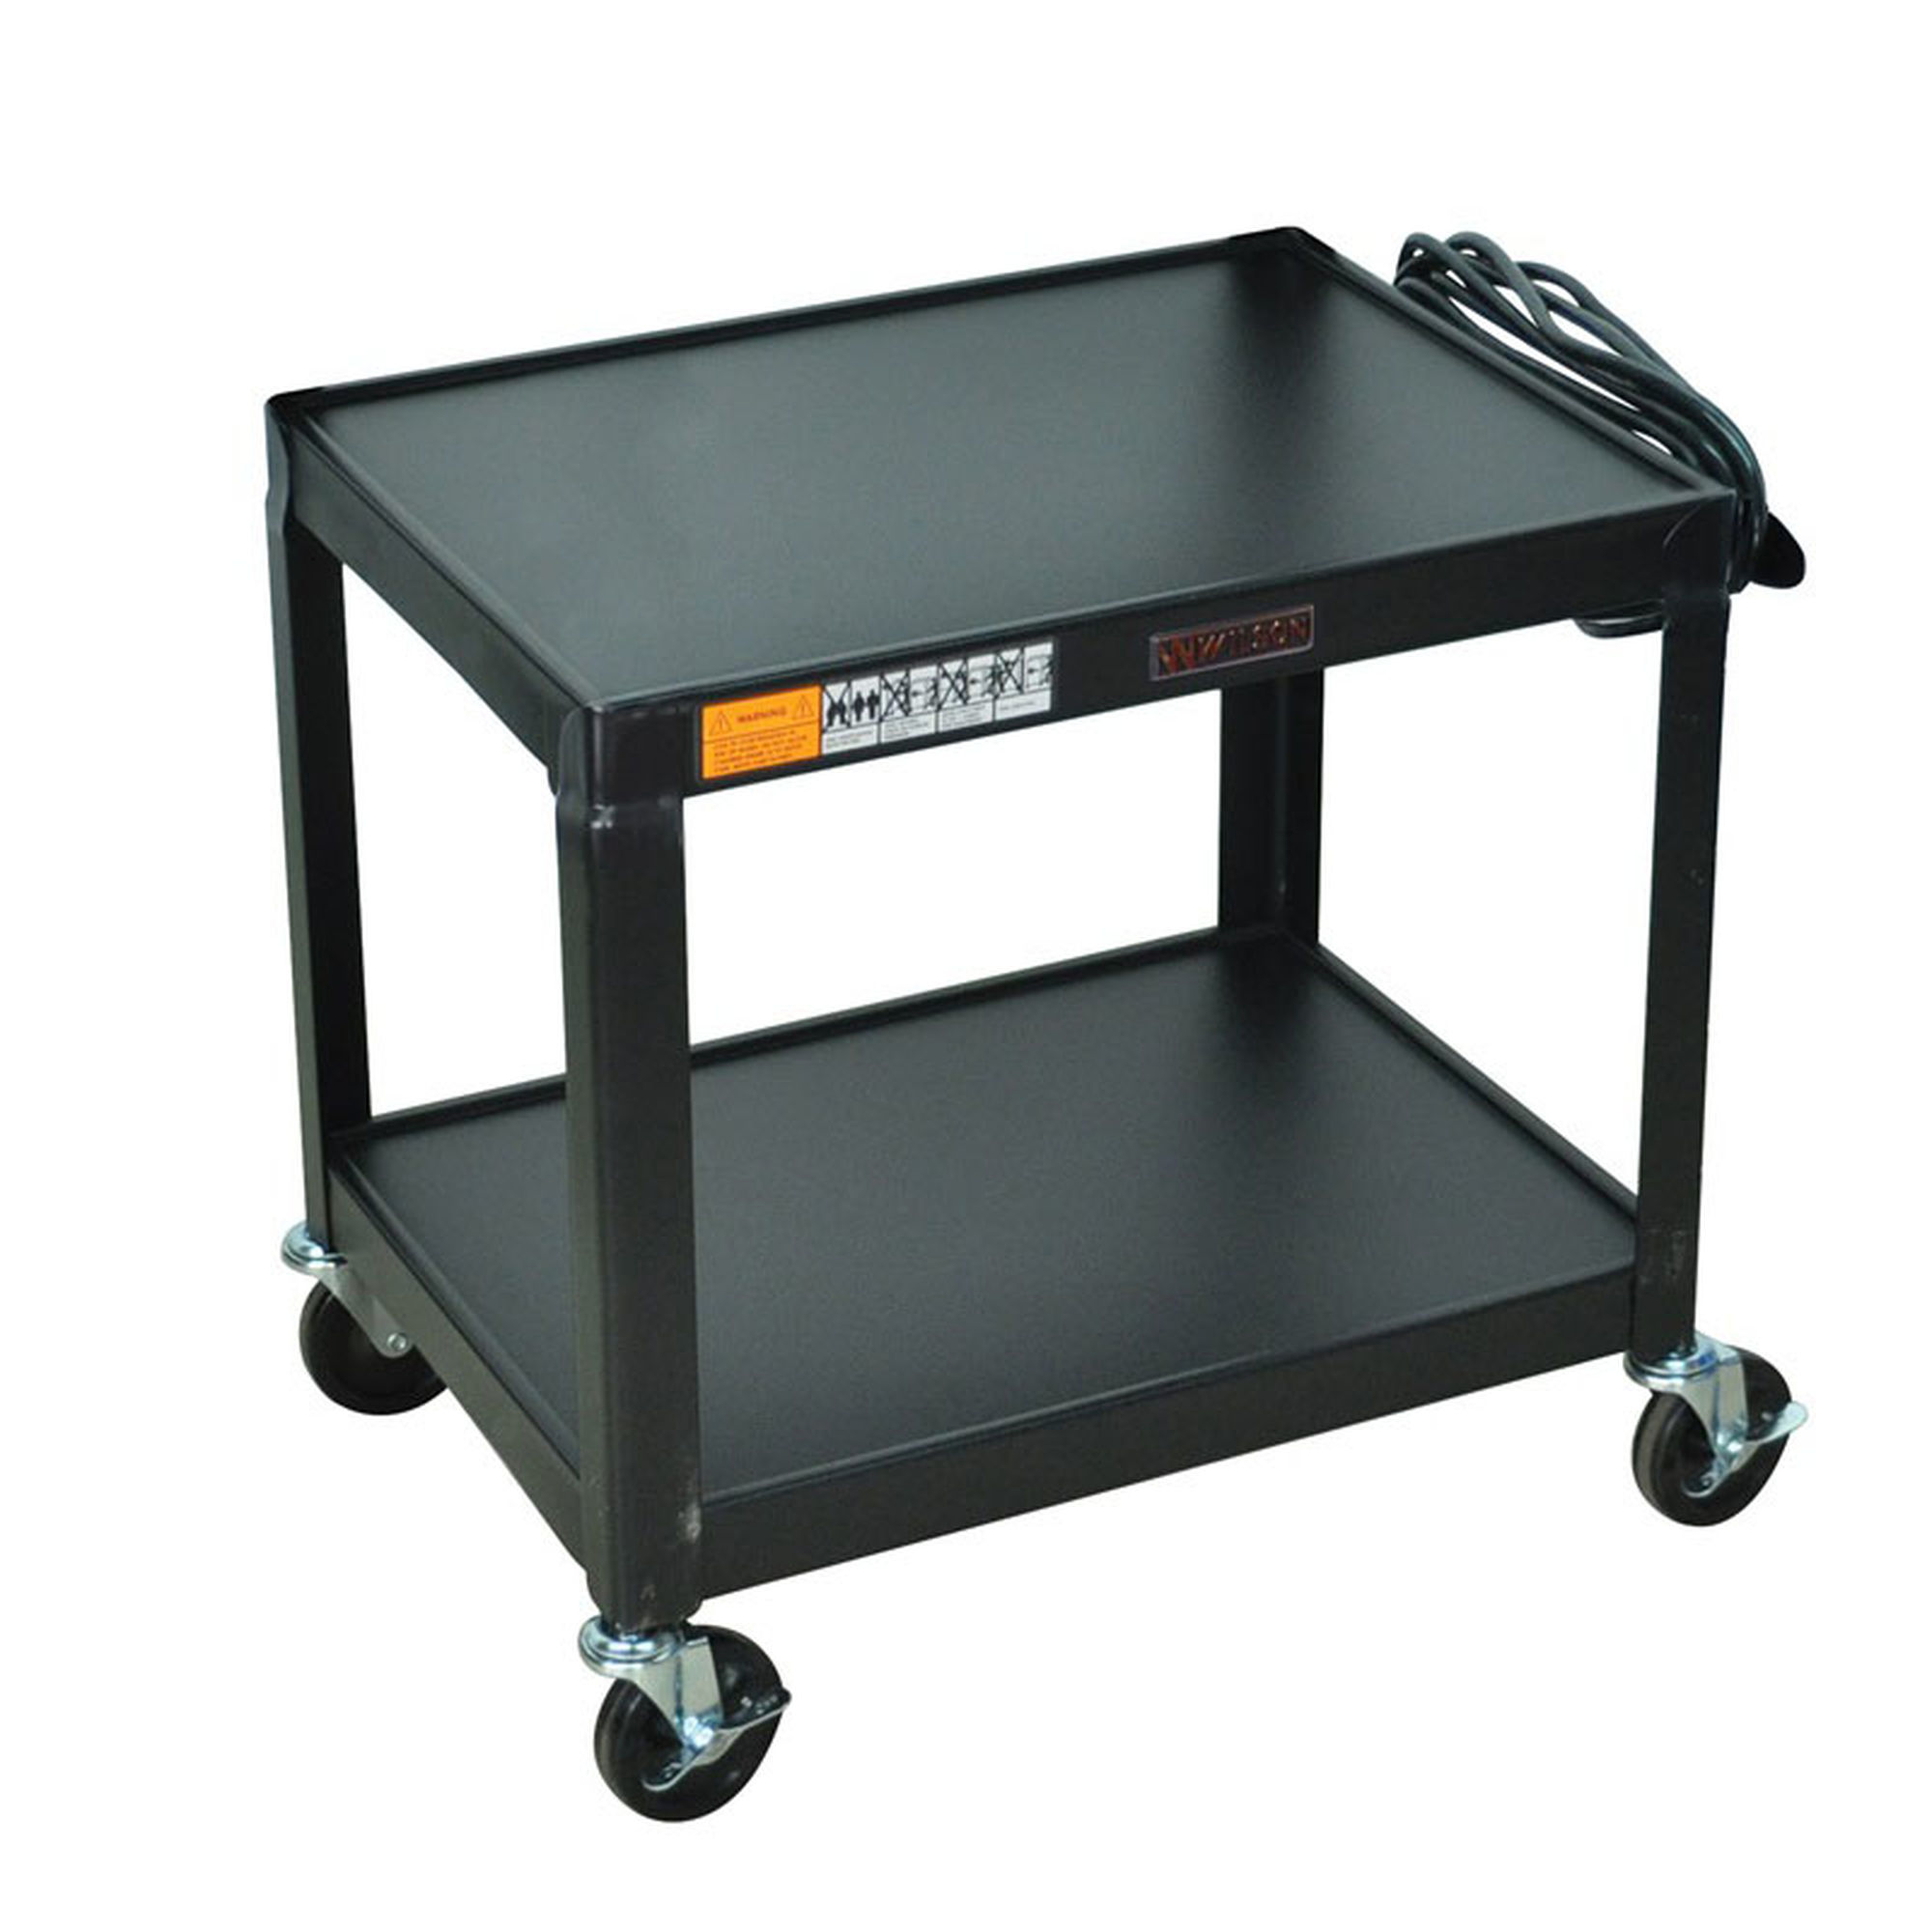 Luxor Lt45-b Mobile Presentation Workstation 3 Shelf Cart With Tray Black for sale online